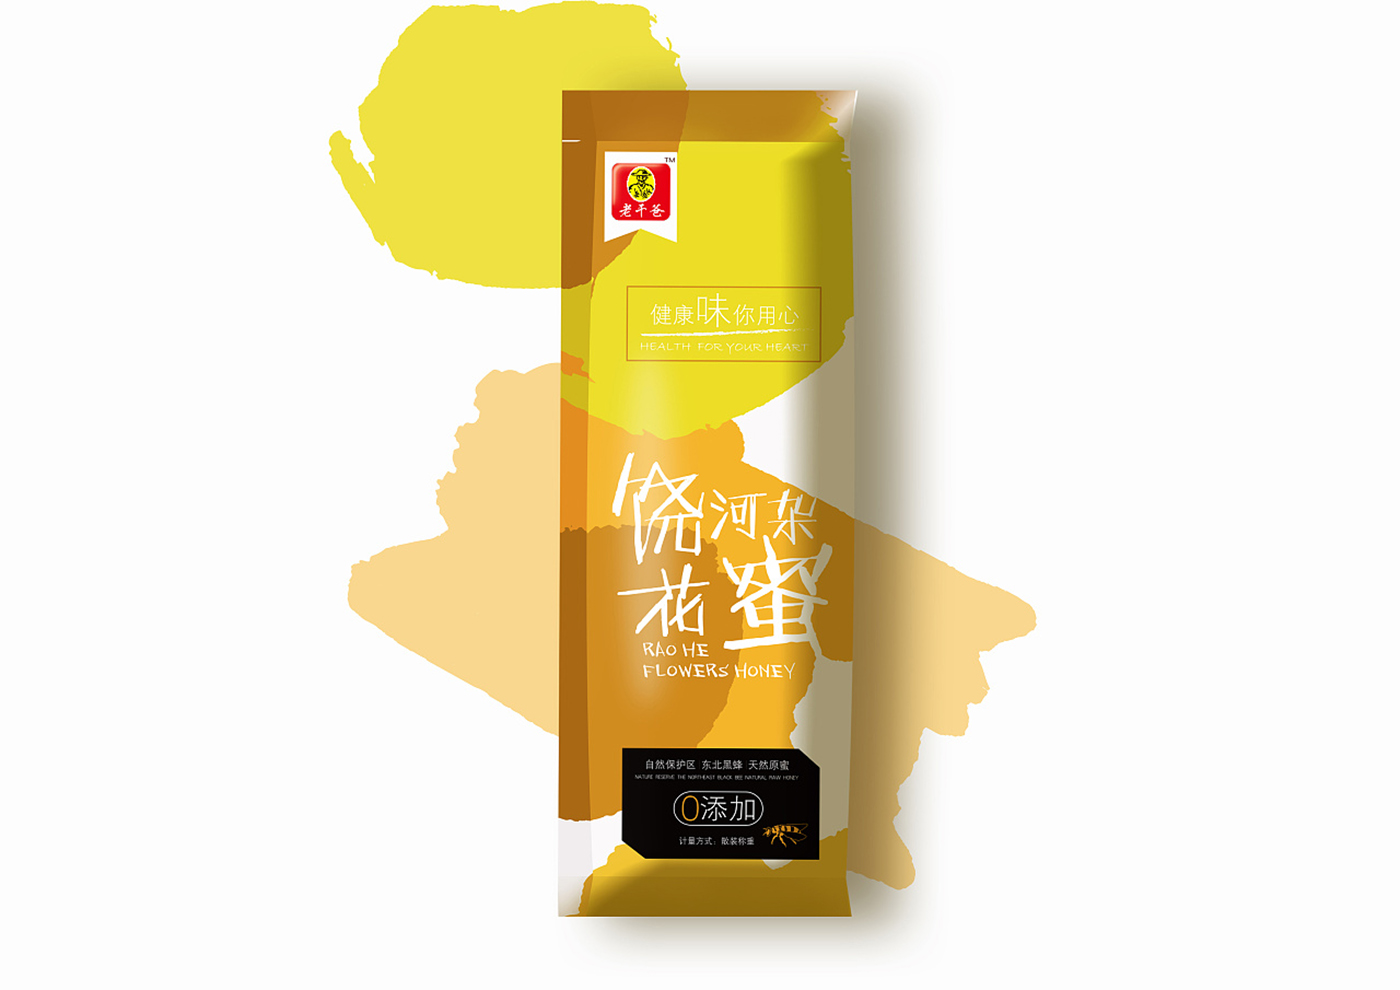 江苏老干爸食品有限公司-老干爸蜂蜜系列包装5